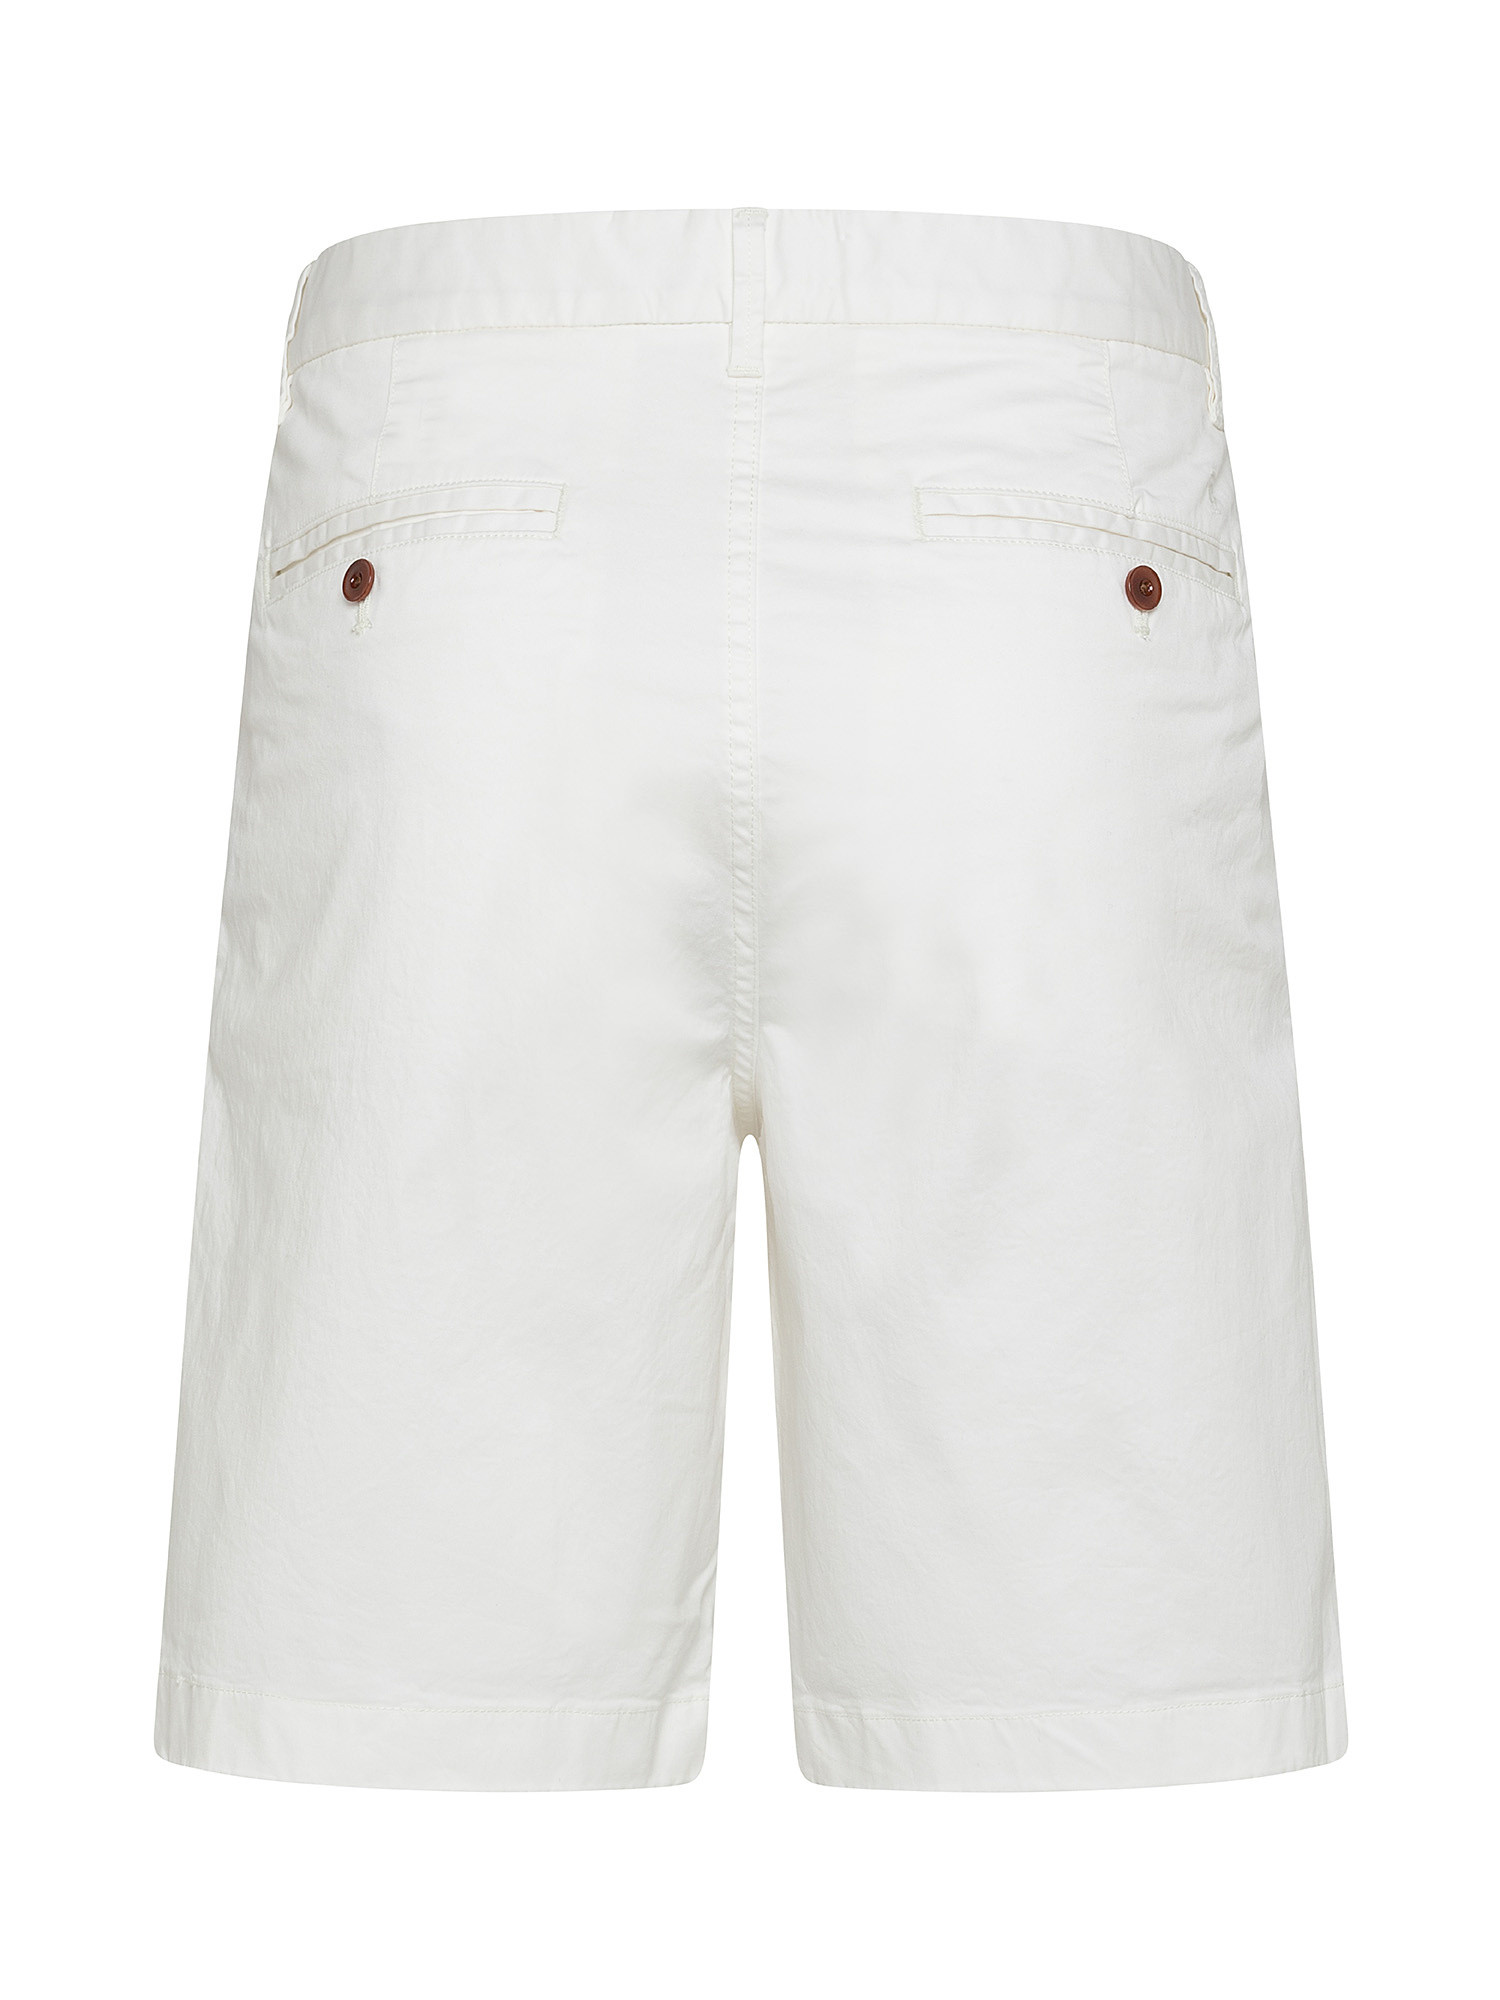 Chino shorts, White Ivory, large image number 1